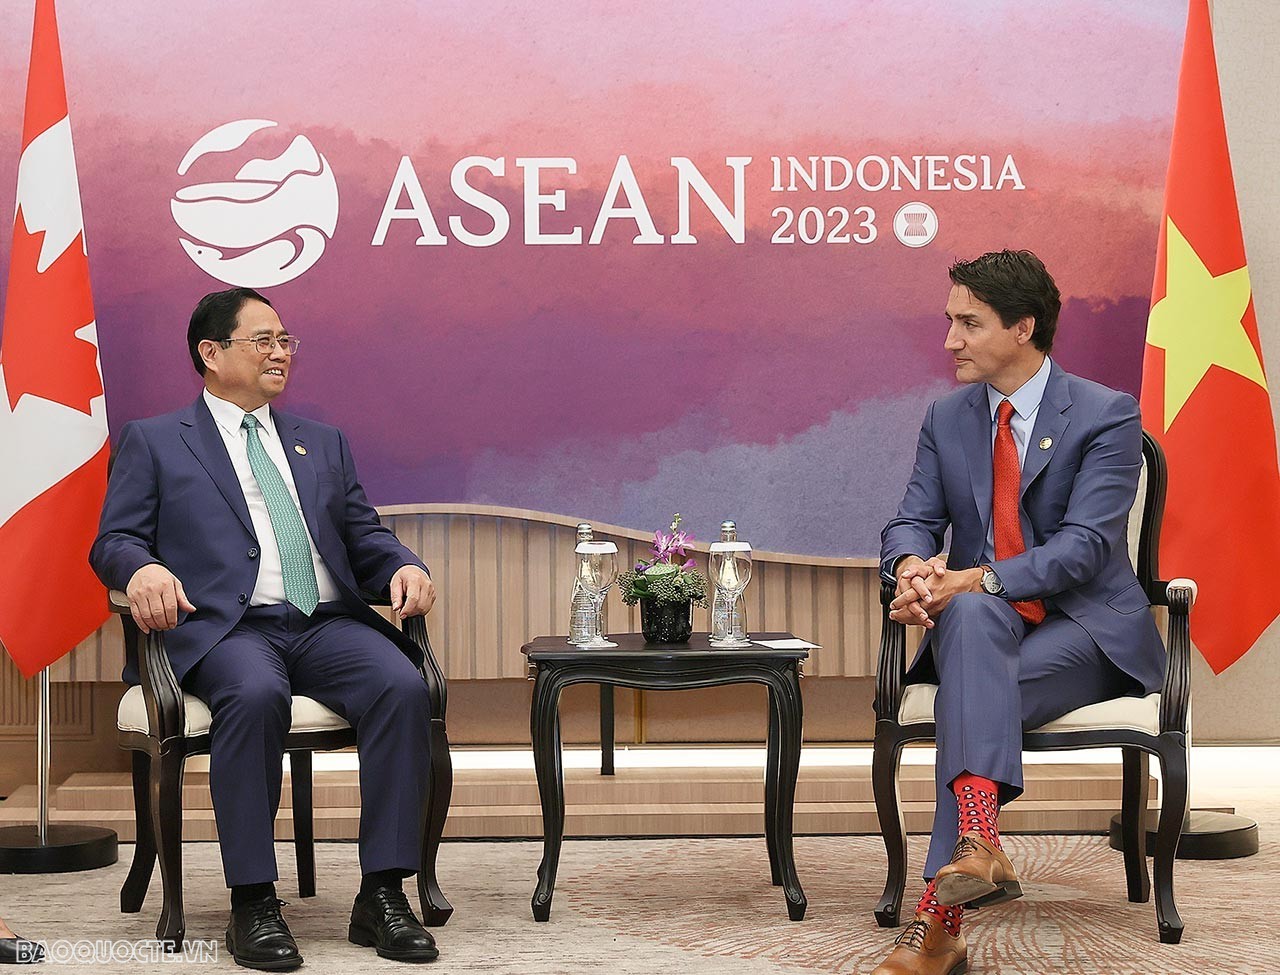 Ngày 6/9, nhân dịp dự Hội nghị cấp cao ASEAN-43 và các Hội nghị liên quan tại Jakarta, Indonesia, Thủ tướng Chính phủ Phạm Minh Chính đã gặp Thủ tướng Canada Justin Trudeau. (Ảnh: Anh Sơn)